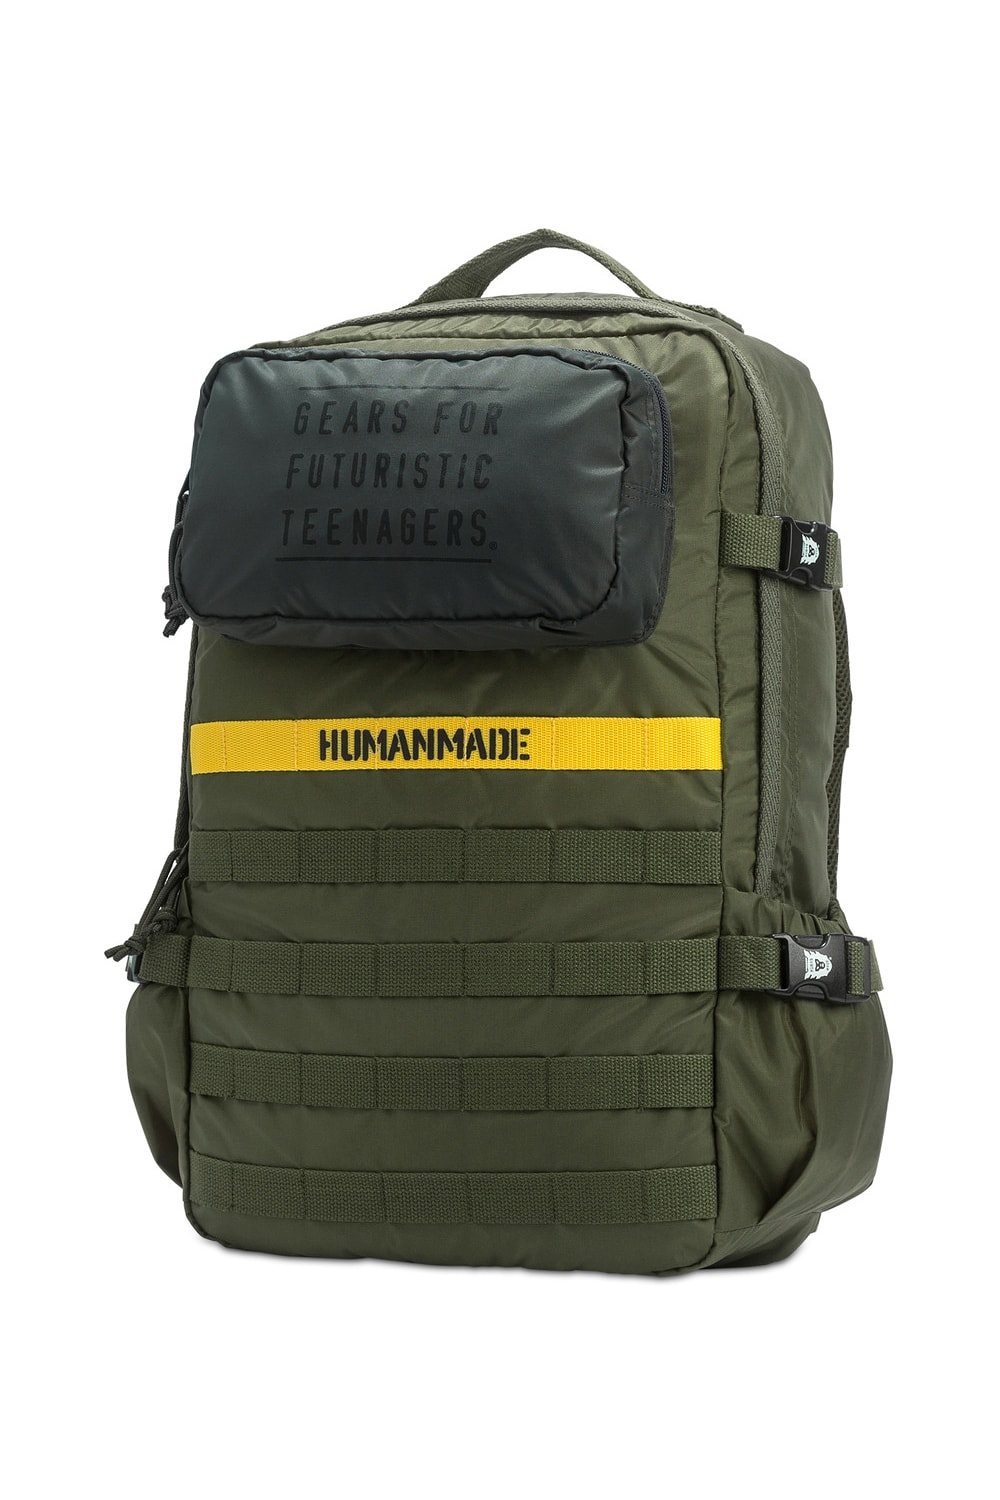 HUMAN MADE Military Backpack Shoulder Bag Spring Summer 2018 green olive